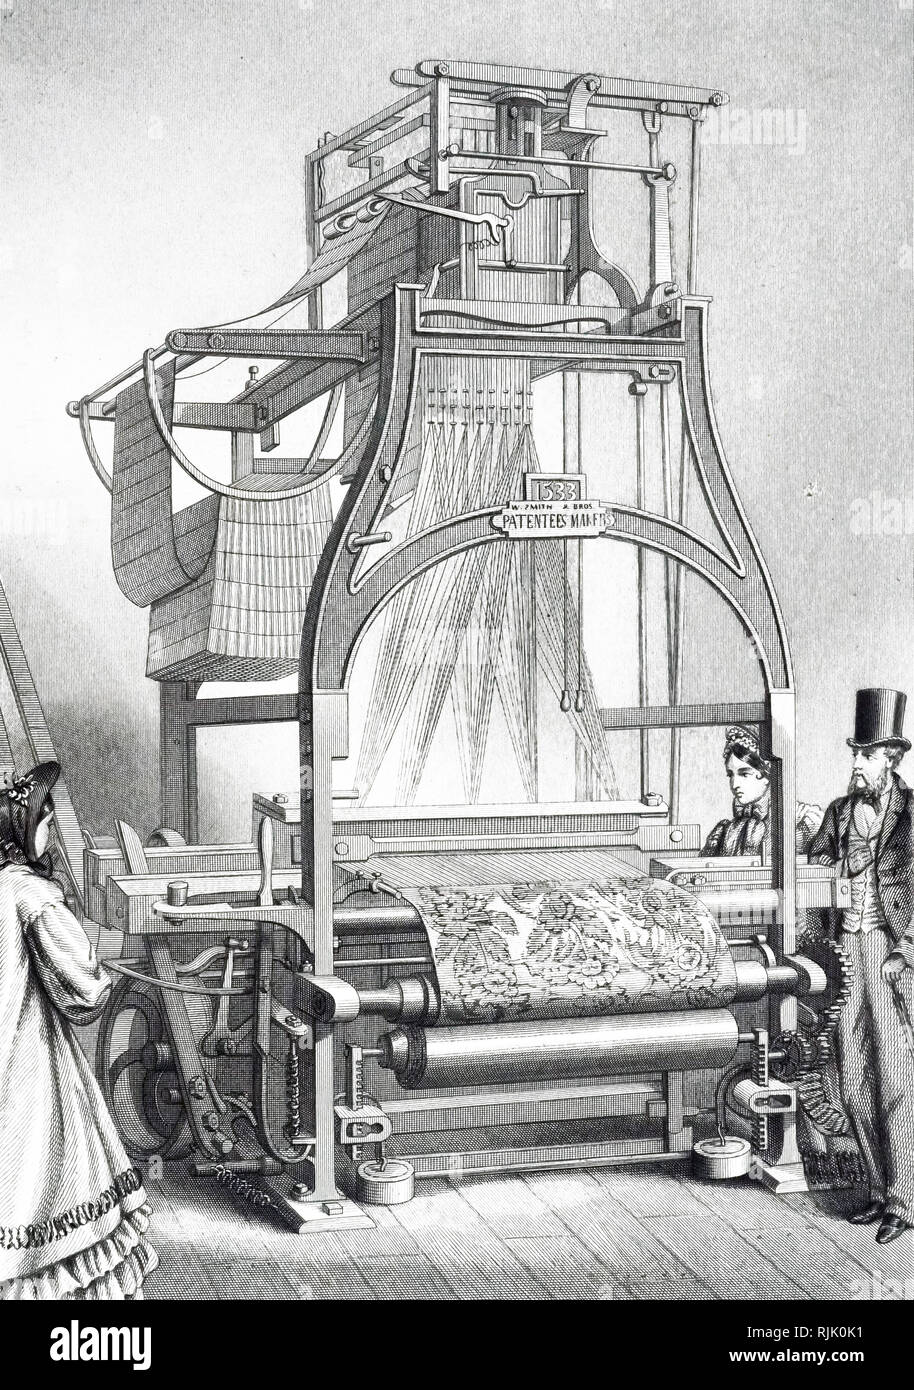 Une gravure représentant un métier Jacquard. La mécanique Jacquard était un  appareil monté sur un métier à tisser mécanique qui simplifie le processus  de fabrication des textiles aux motifs complexes tels que